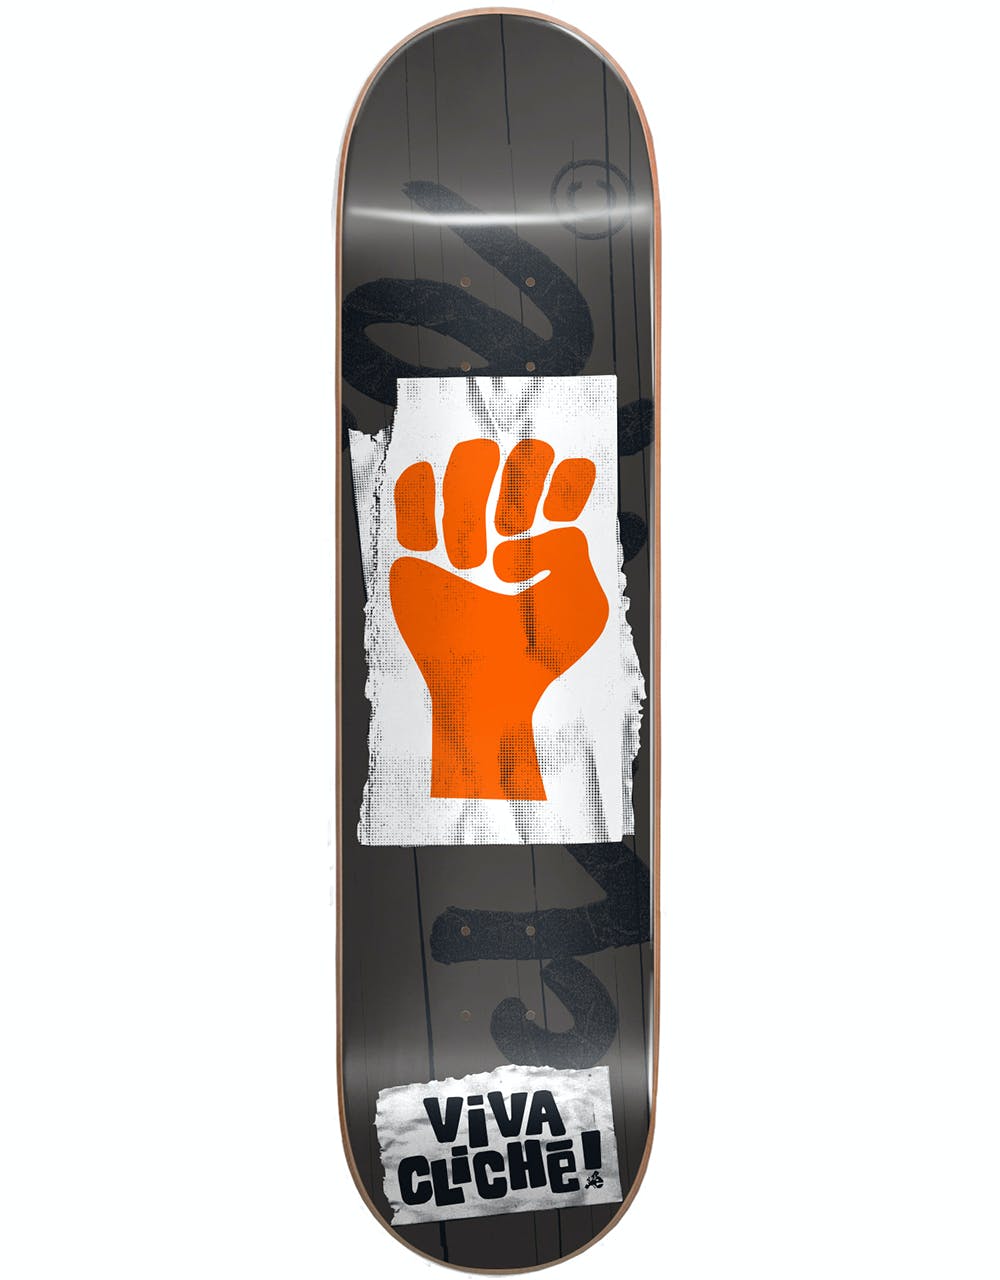 Cliché Viva Cliché RHM Skateboard Deck - 8"